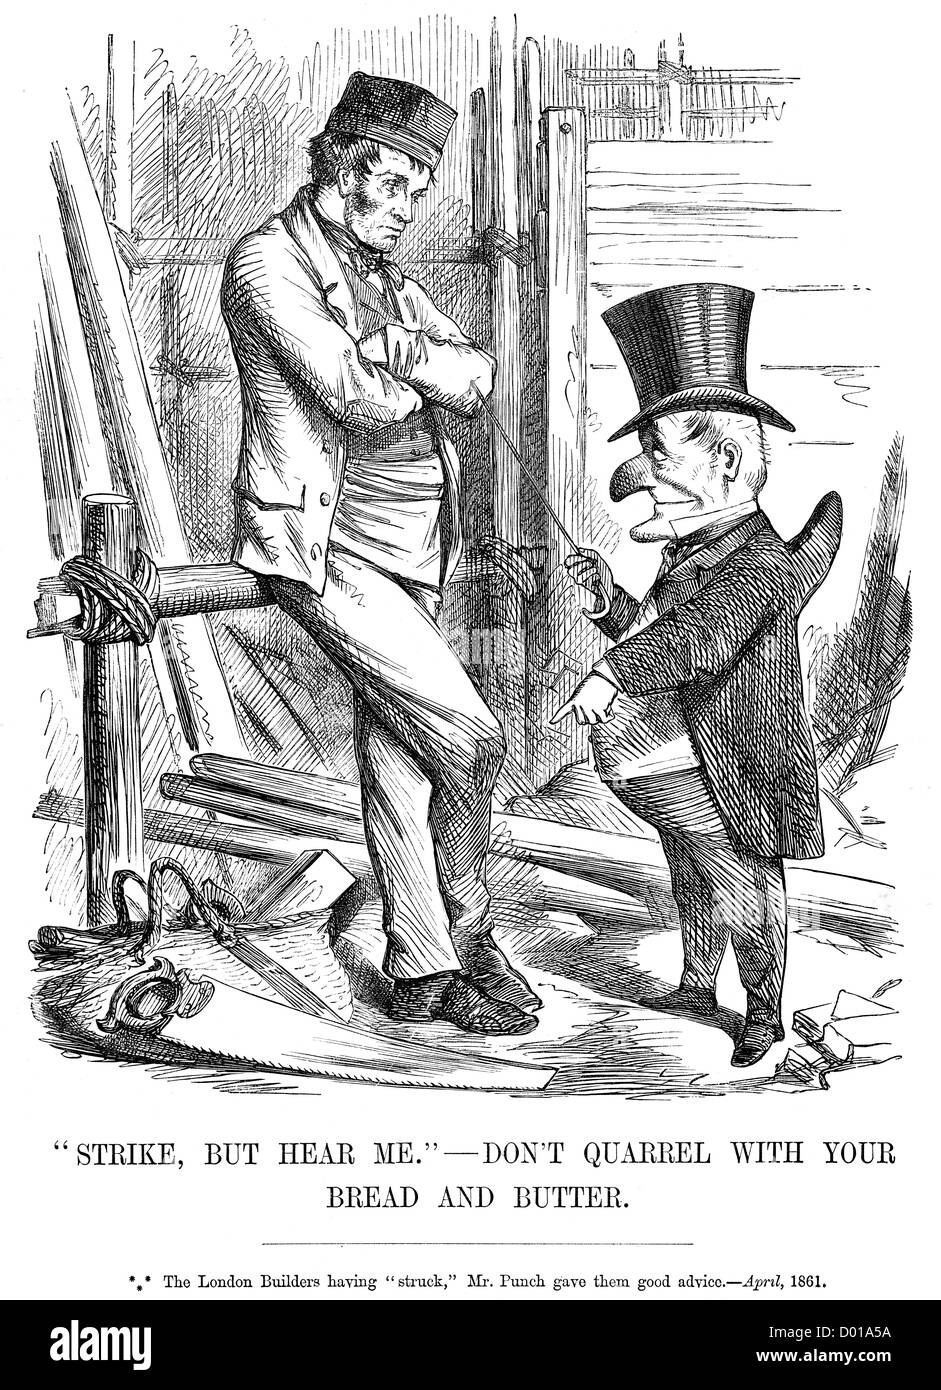 Grève, mais m'entendre, ne pas se quereller avec votre pain et beurre. Caricature politique à propos de London Builders grève, Avril 1861 Banque D'Images